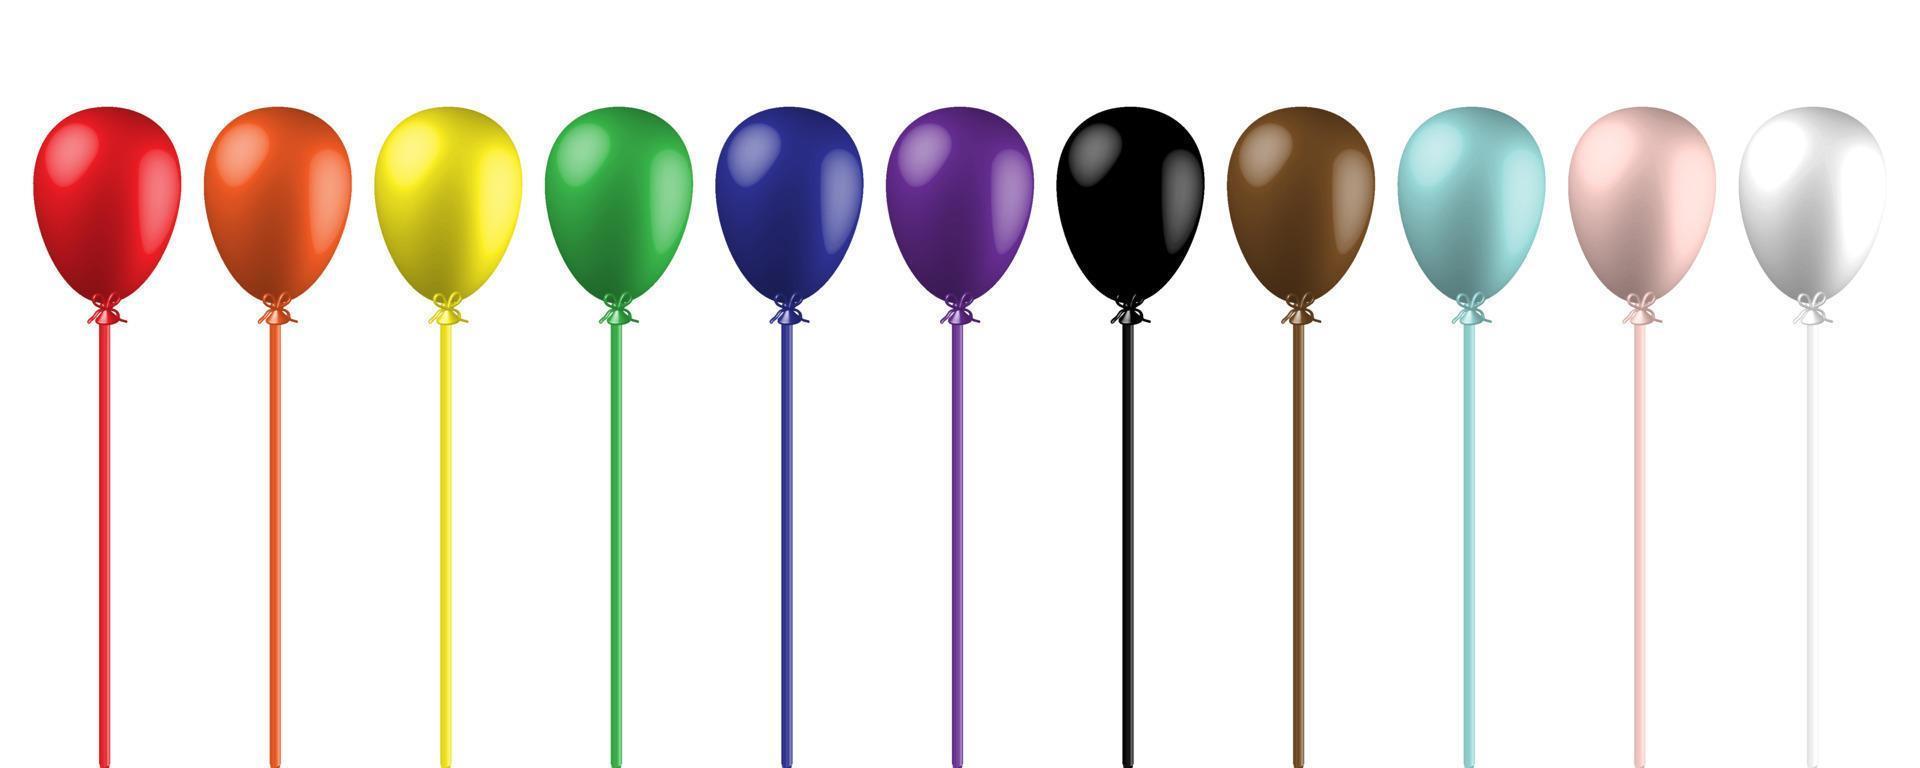 lgbtq-stolzflagge. 3D-Ballons auf weißem Hintergrund. regenbogenfarben realistische luftballons gesetzt. Fortschritts-Stolz-Flagge. Vektor-Illustration. vektor